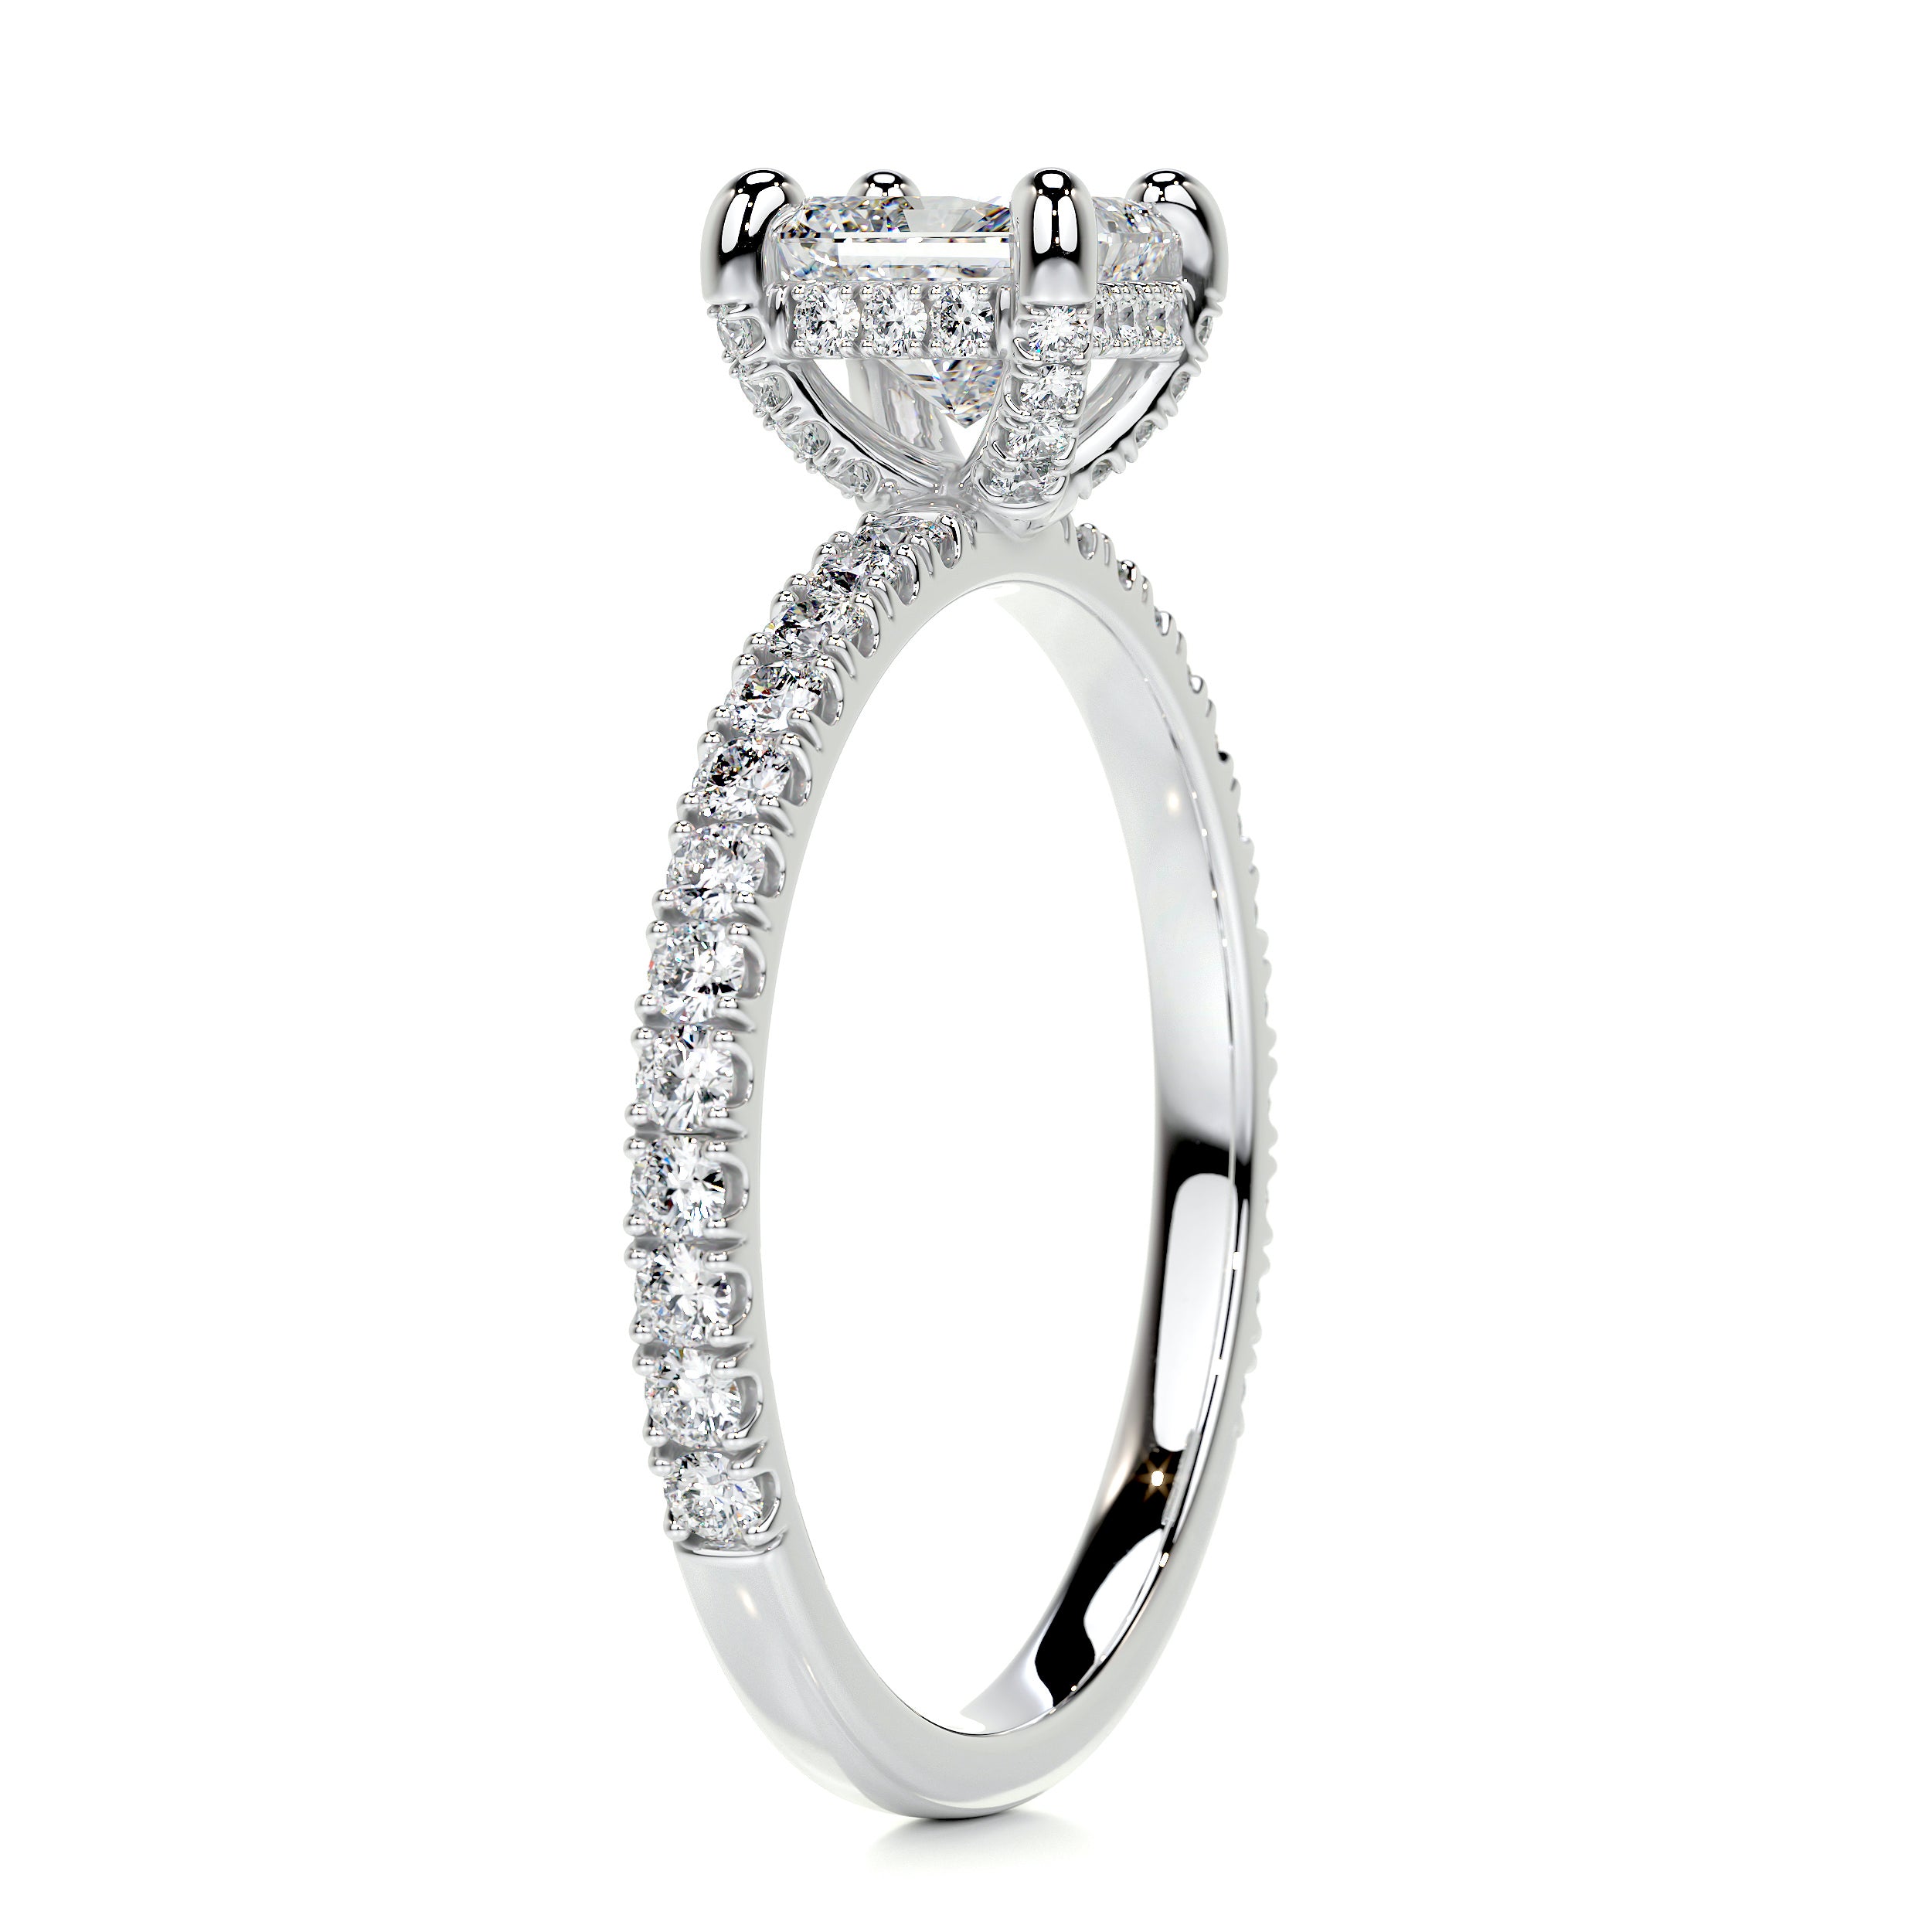 Deborah Diamond Engagement Ring   (1.50 Carat) -14K White Gold